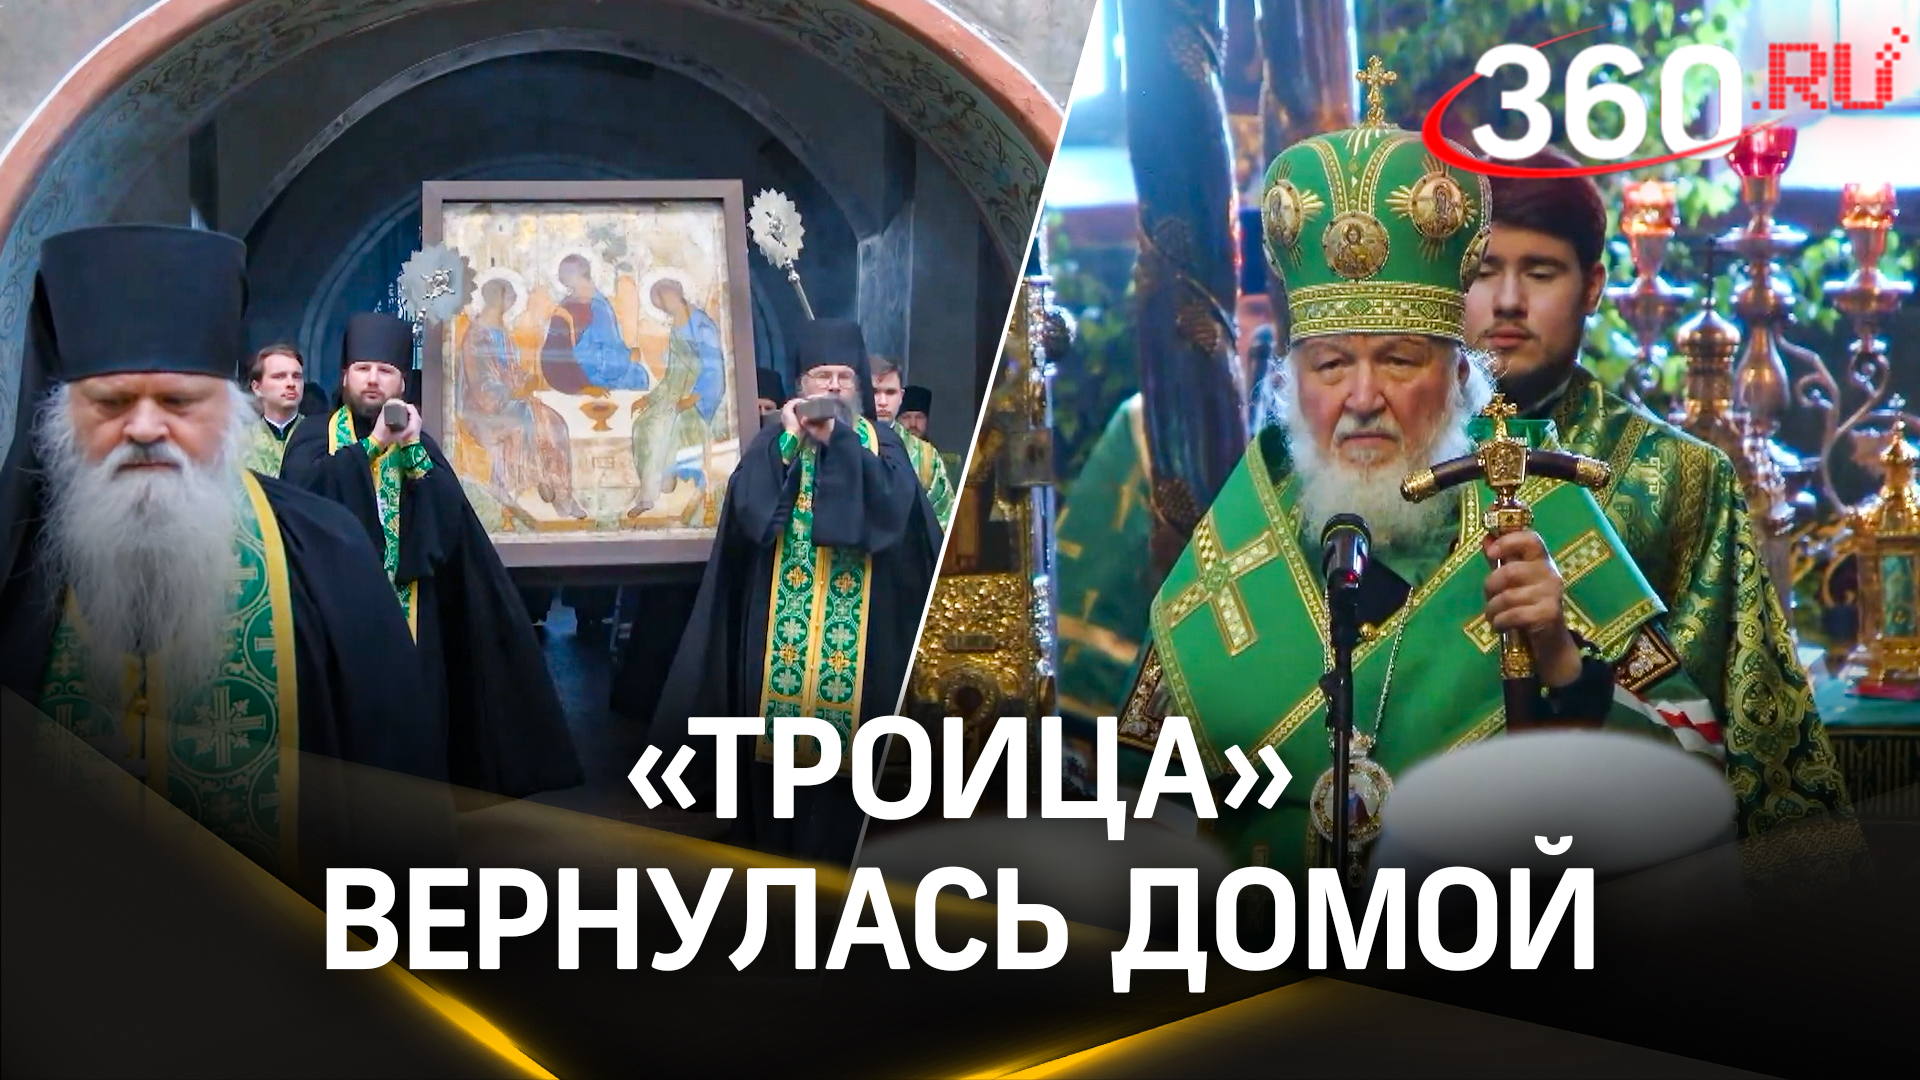 Икона Рублева вернулась домой: как прошёл праздник Святой Троицы в лавре в Сергиевом Посаде